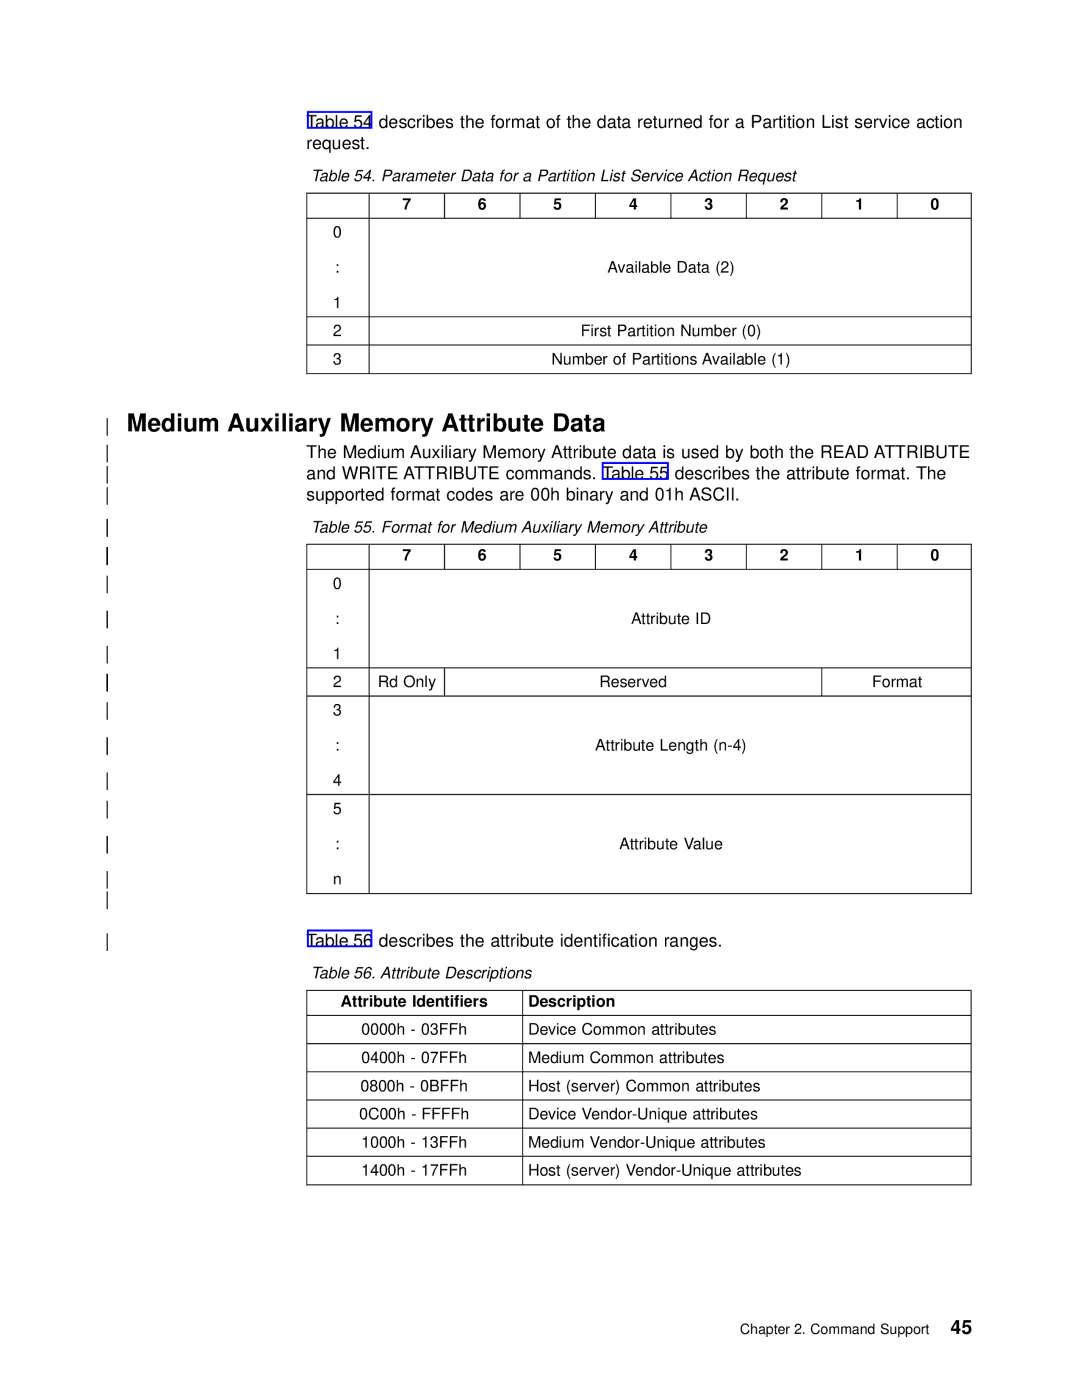 IBM T200F Medium Auxiliary Memory Attribute Data, Format for Medium Auxiliary Memory Attribute, Attribute Descriptions 